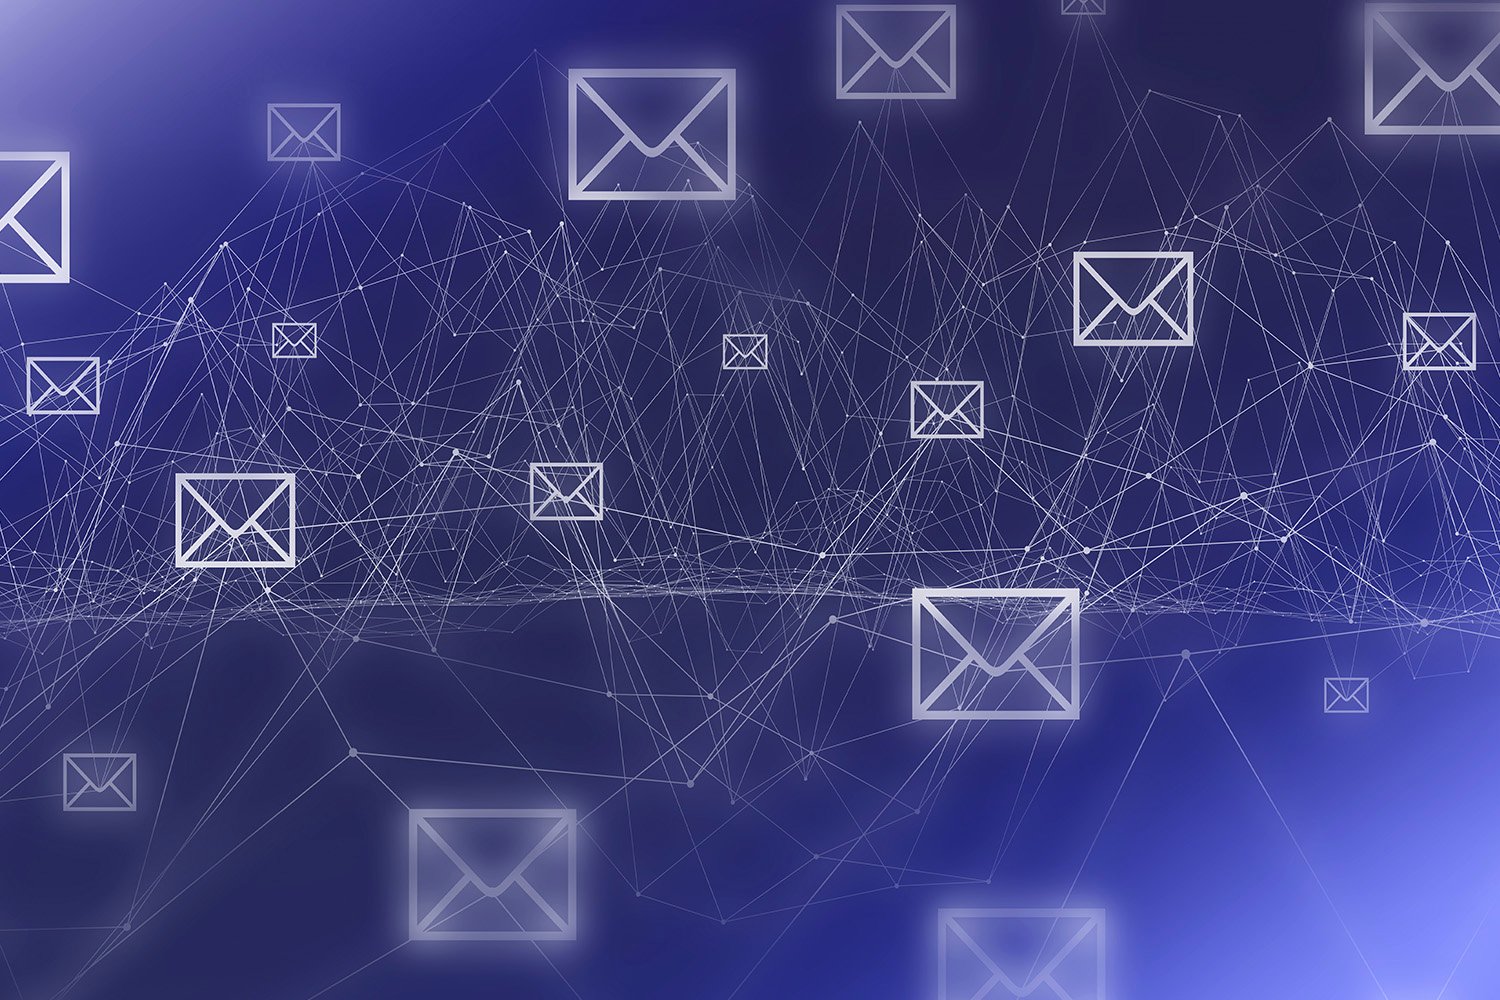 El correo electrónico empresarial puede interconectar todos los nodos de una red y volverlos vulnerables